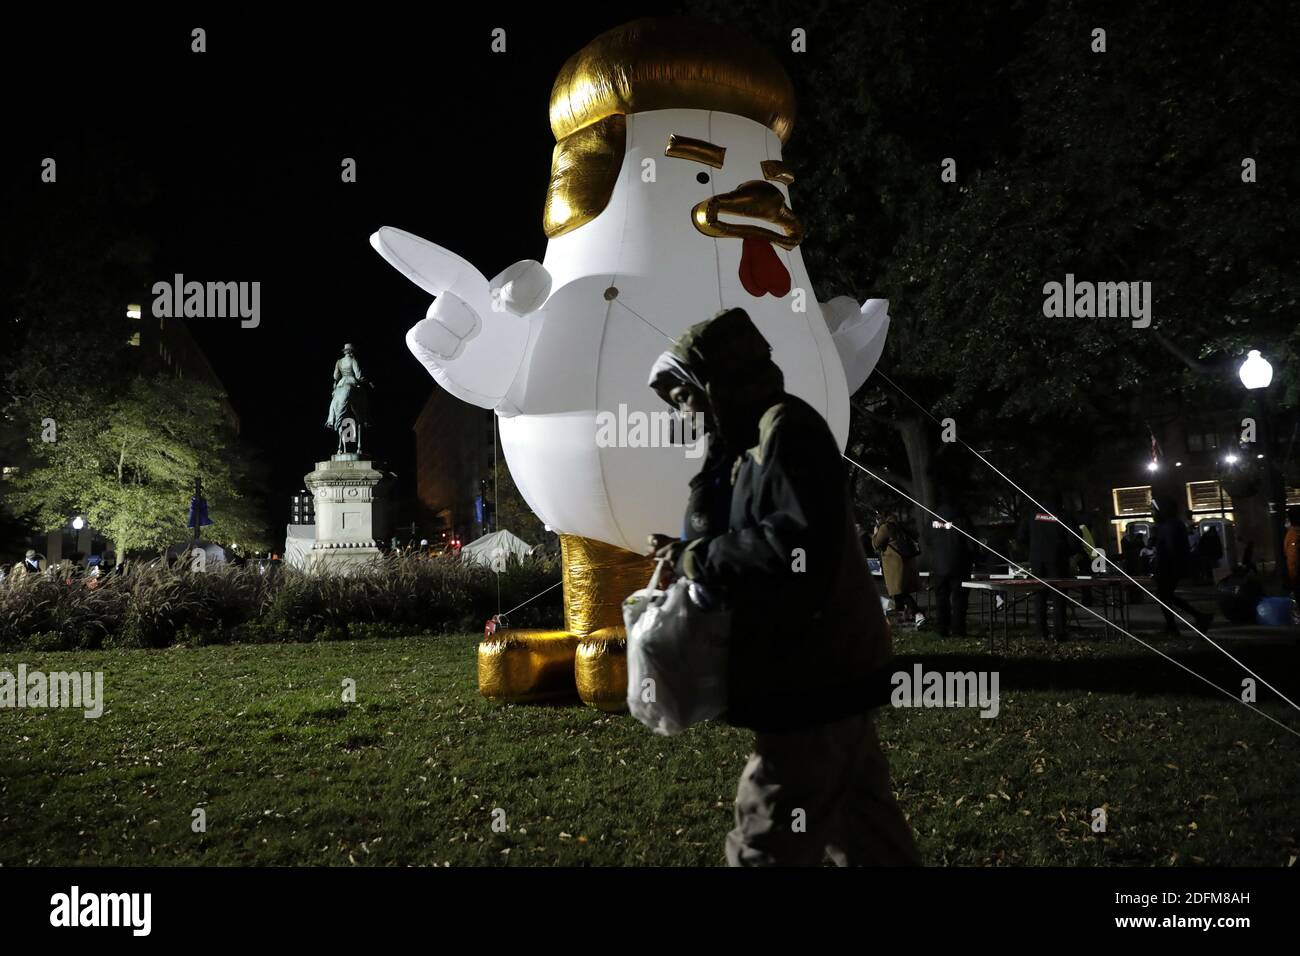 Ein Mann geht an einem riesigen aufblasbaren Huhn vorbei, das US-Präsident Donald Trump während der Präsidentschaftswahlnacht nahe dem Weißen Haus in Washington am 3. November 2020 beklagt. Foto von Yuri Gripas/ABACAPRESS.COM Stockfoto